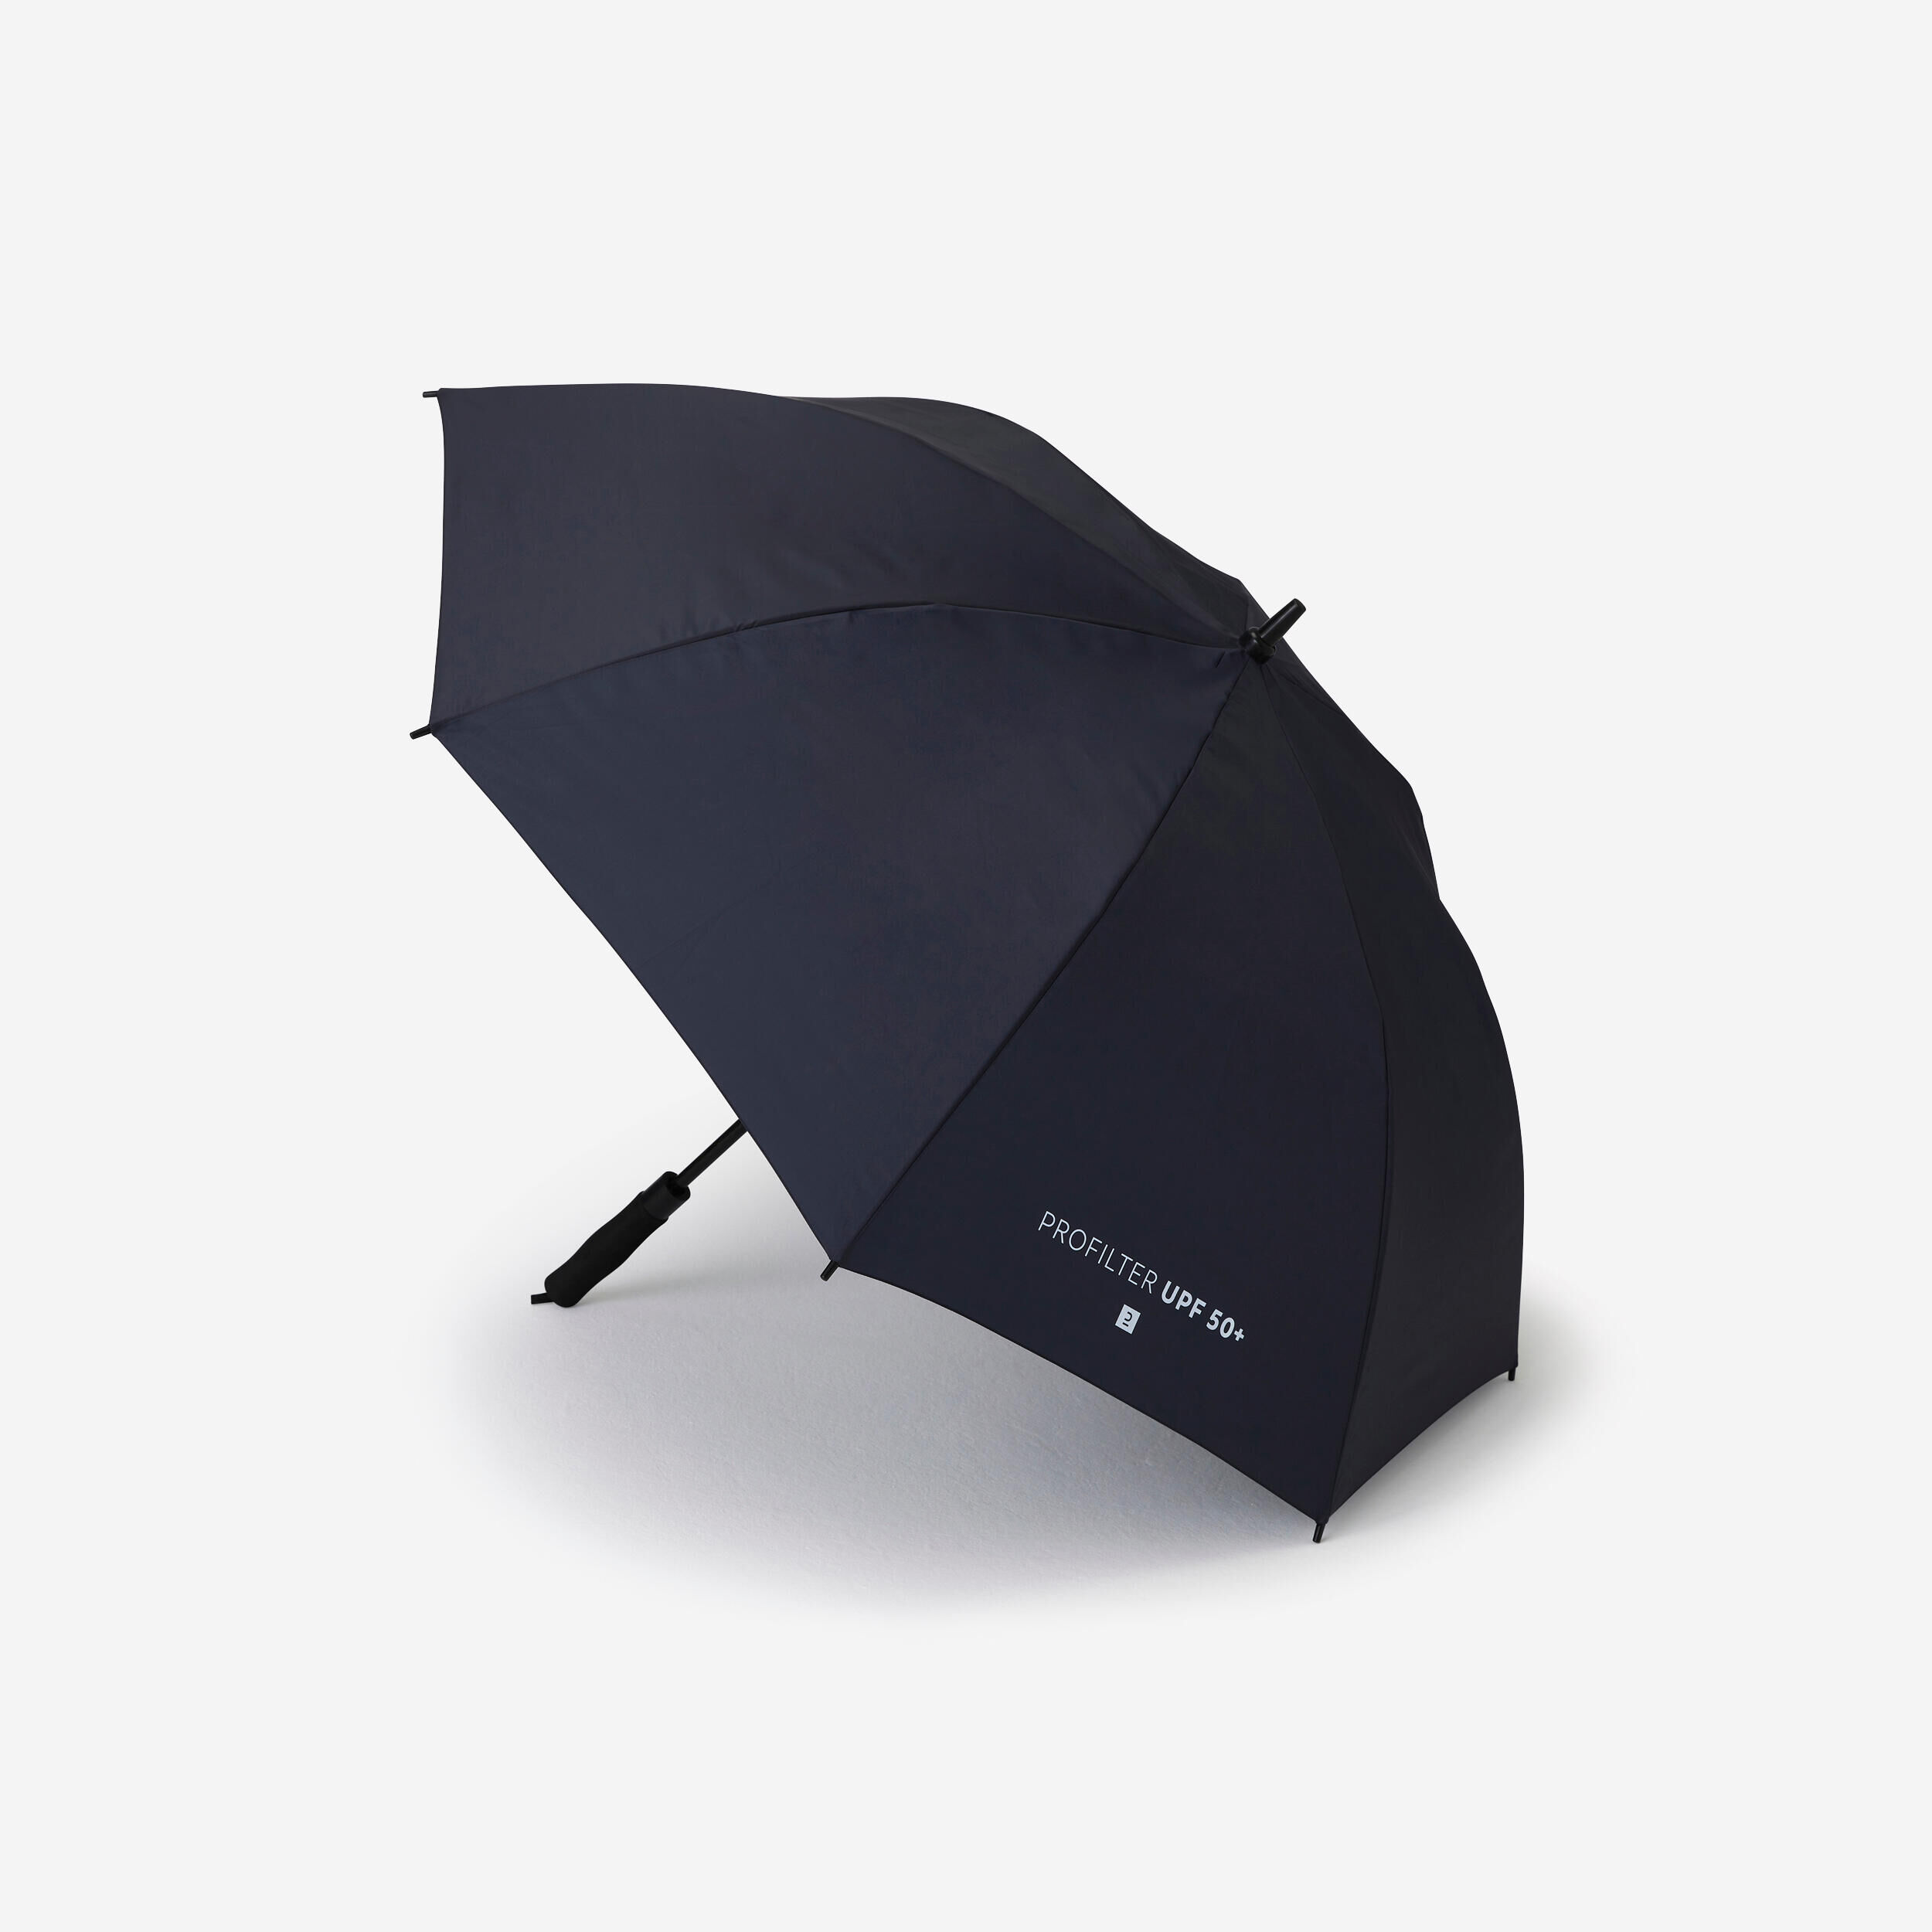 DECATHLON Small umbrella - ProFilter dark blue